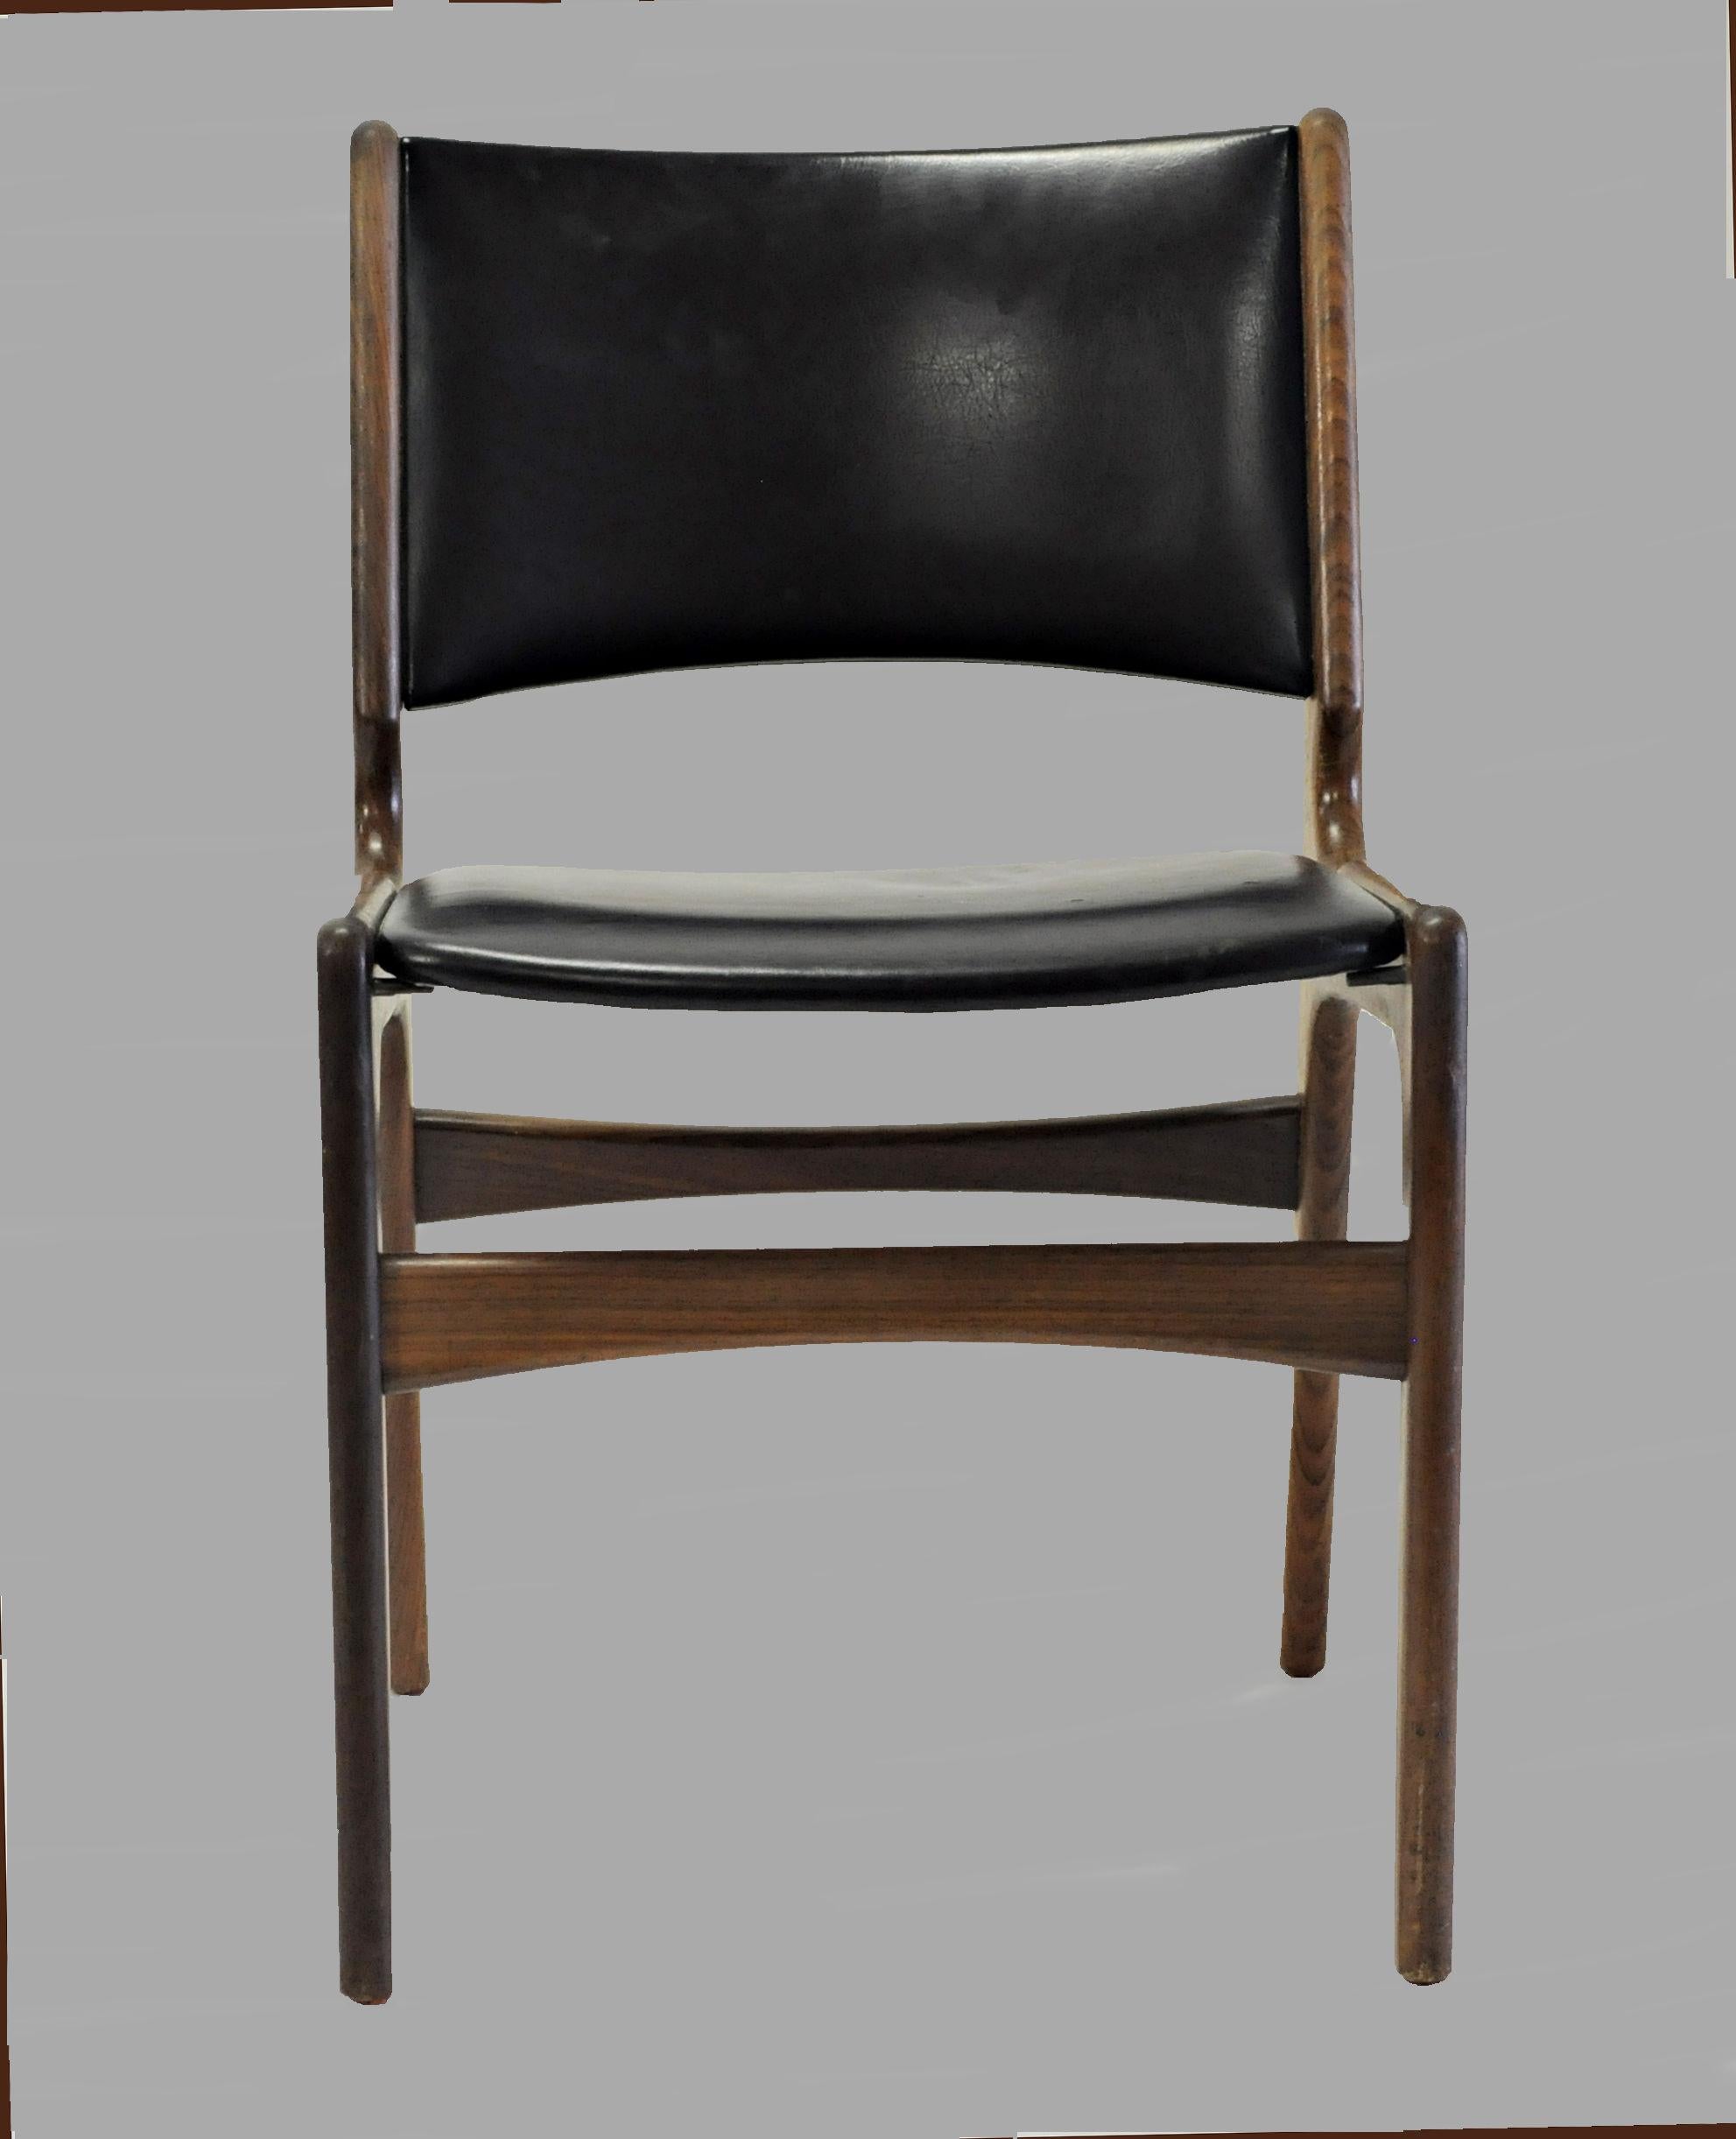 Six chaises de salle à manger Erik Buch fabriquées par Oddense Maskinsnedkeri.

Les chaises sont dotées d'un cadre en teck massif et, comme toutes les chaises d'Erik Buchs, elles se caractérisent par des matériaux de haute qualité, une fabrication